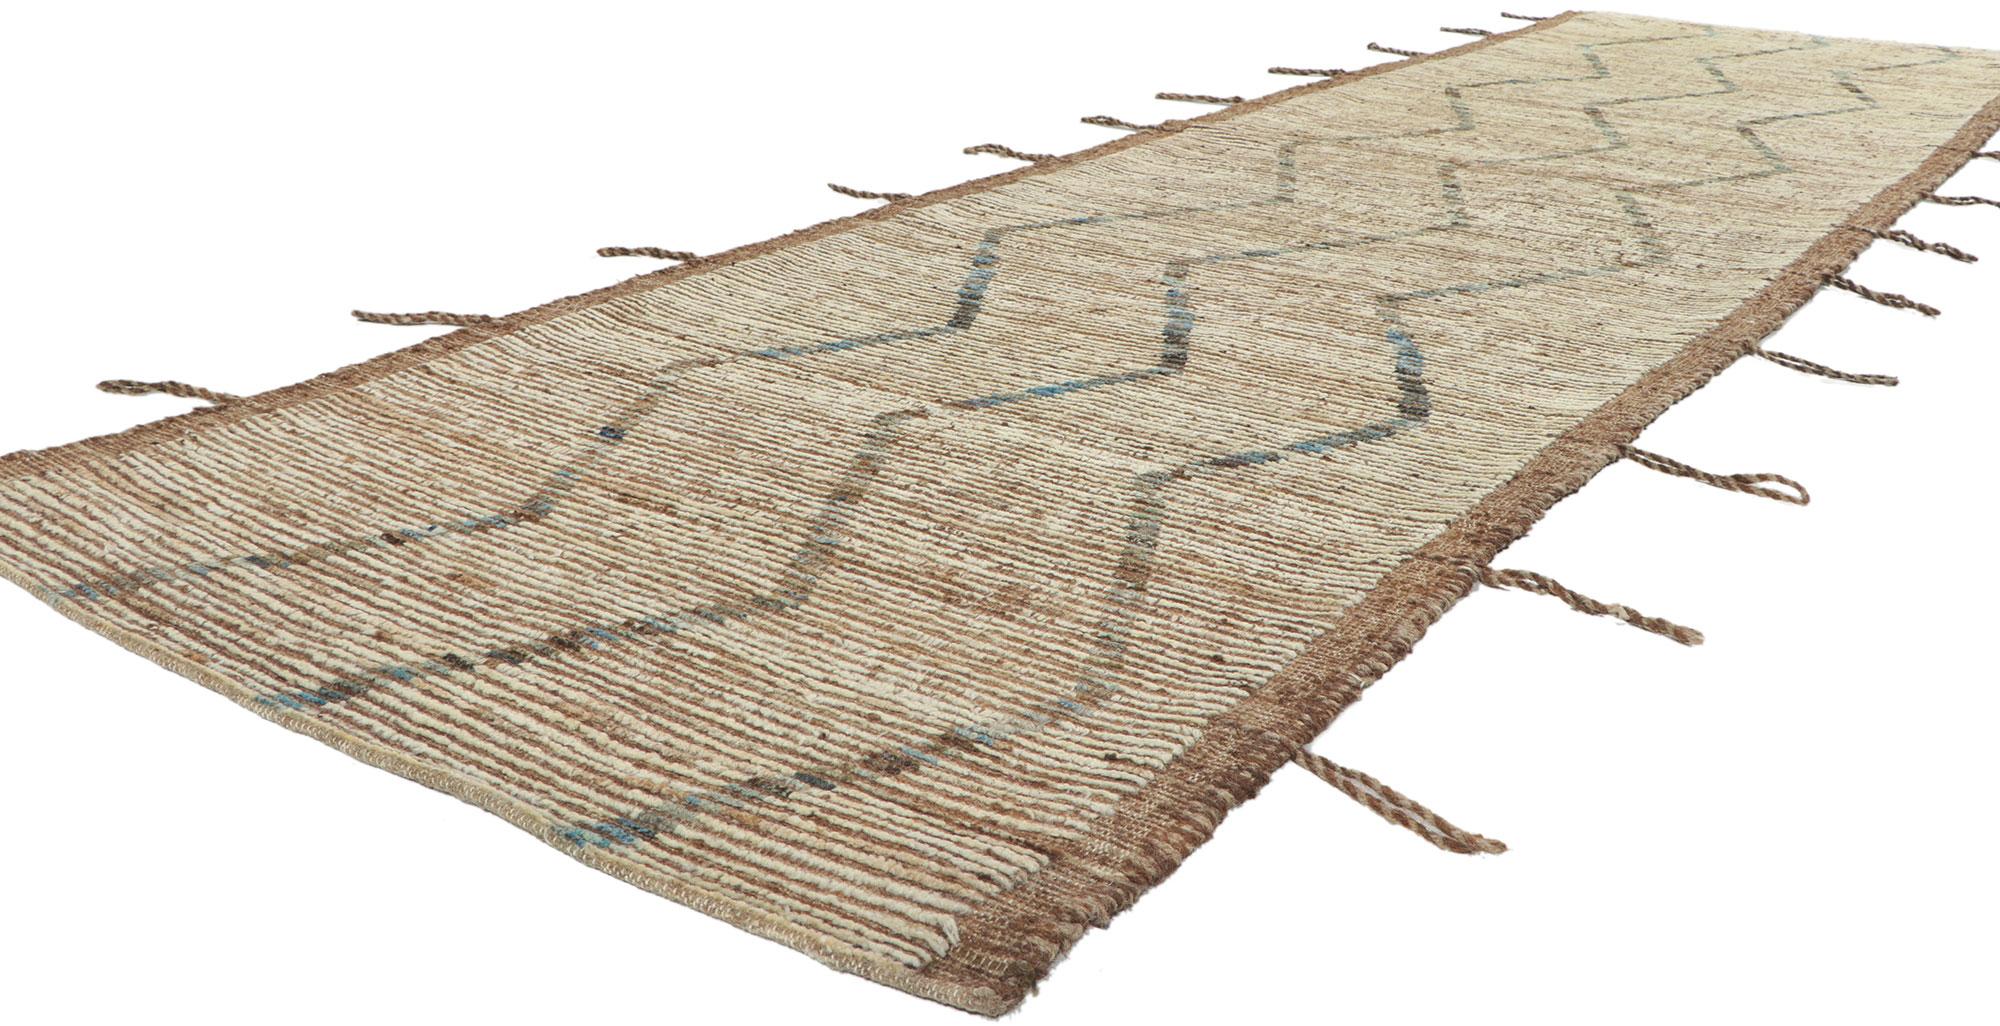 80776 New Tapis de course marocain contemporain, 03'06 x 12'05. Avec son style moderne, ses détails et sa texture incroyables, ce chemin de table marocain contemporain en laine nouée à la main est une vision captivante de la beauté tissée. Le motif